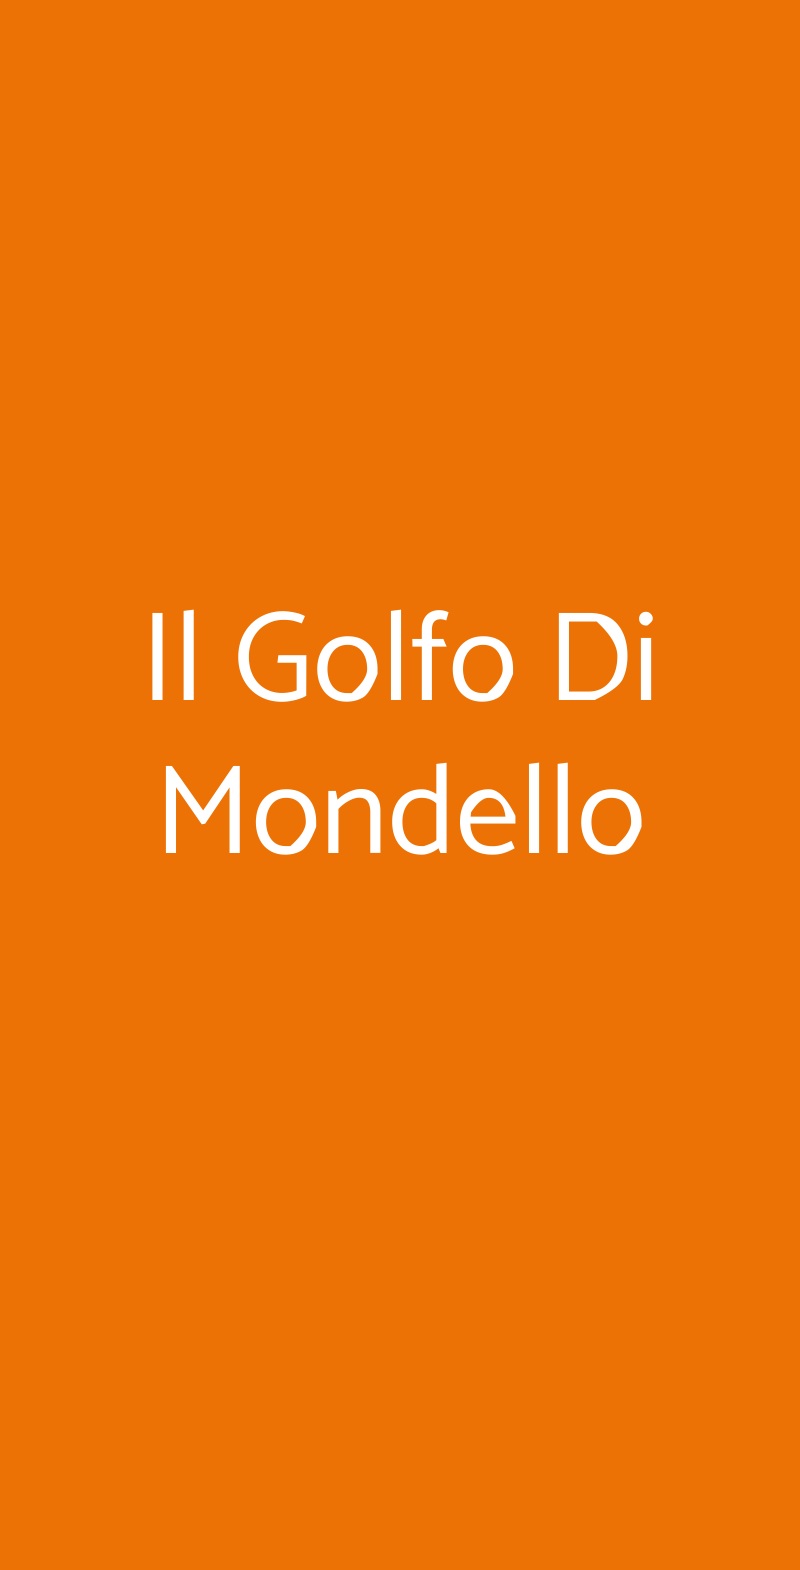 Il Golfo Di Mondello Milano menù 1 pagina